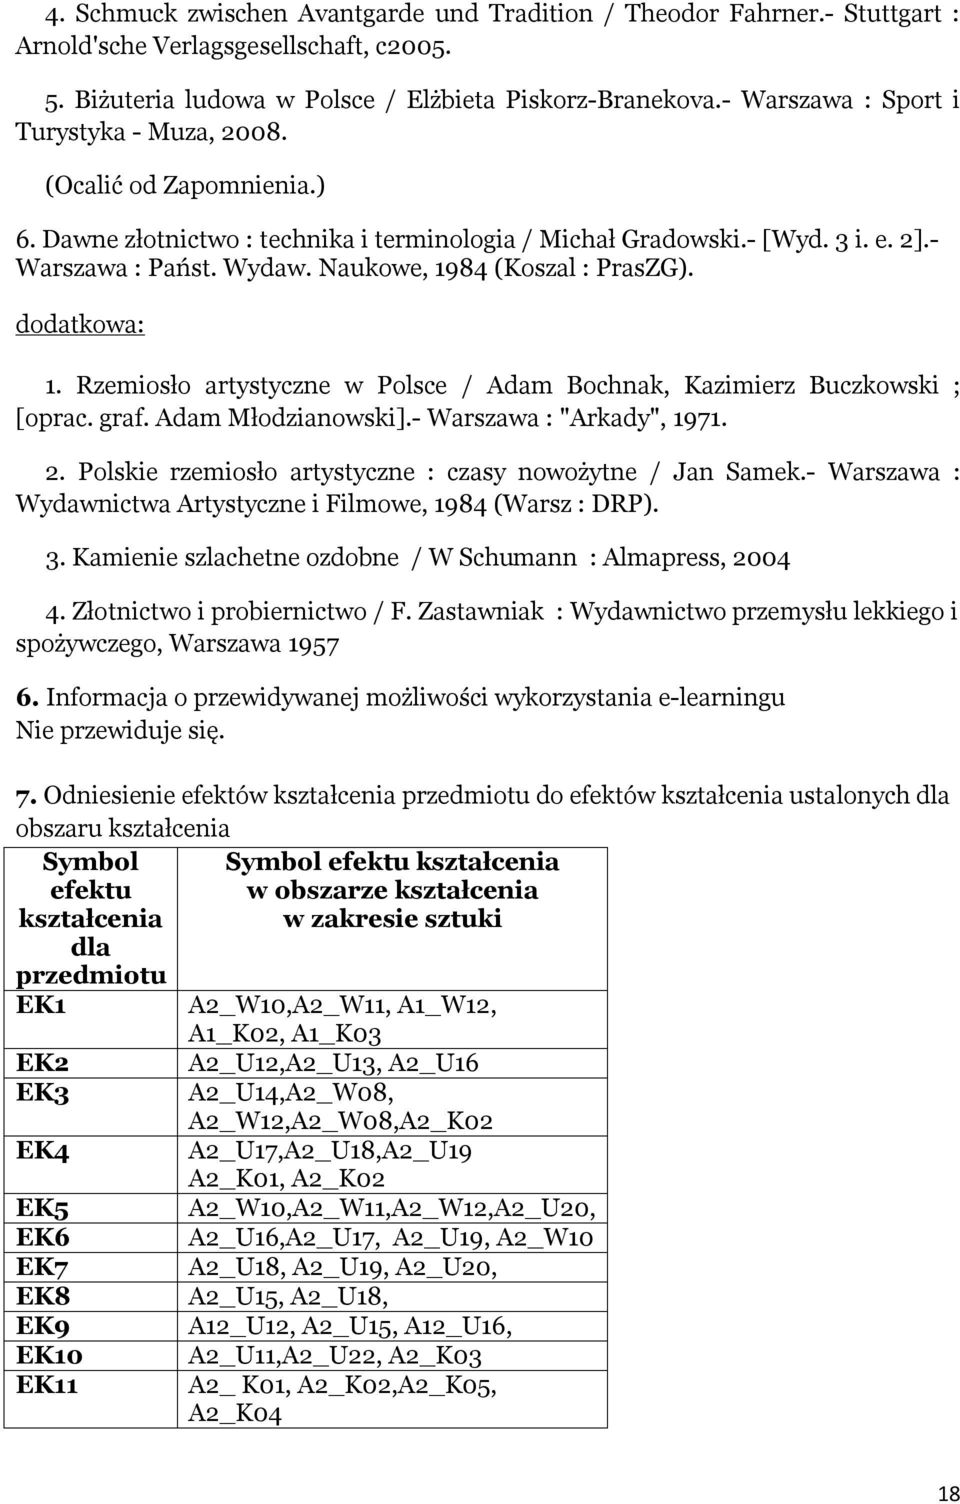 Naukowe, 1984 (Koszal : PrasZG). dodatkowa: 1. Rzemiosło artystyczne w Polsce / Adam Bochnak, Kazimierz Buczkowski ; [oprac. graf. Adam Młodzianowski].- Warszawa : "Arkady", 1971. 2.